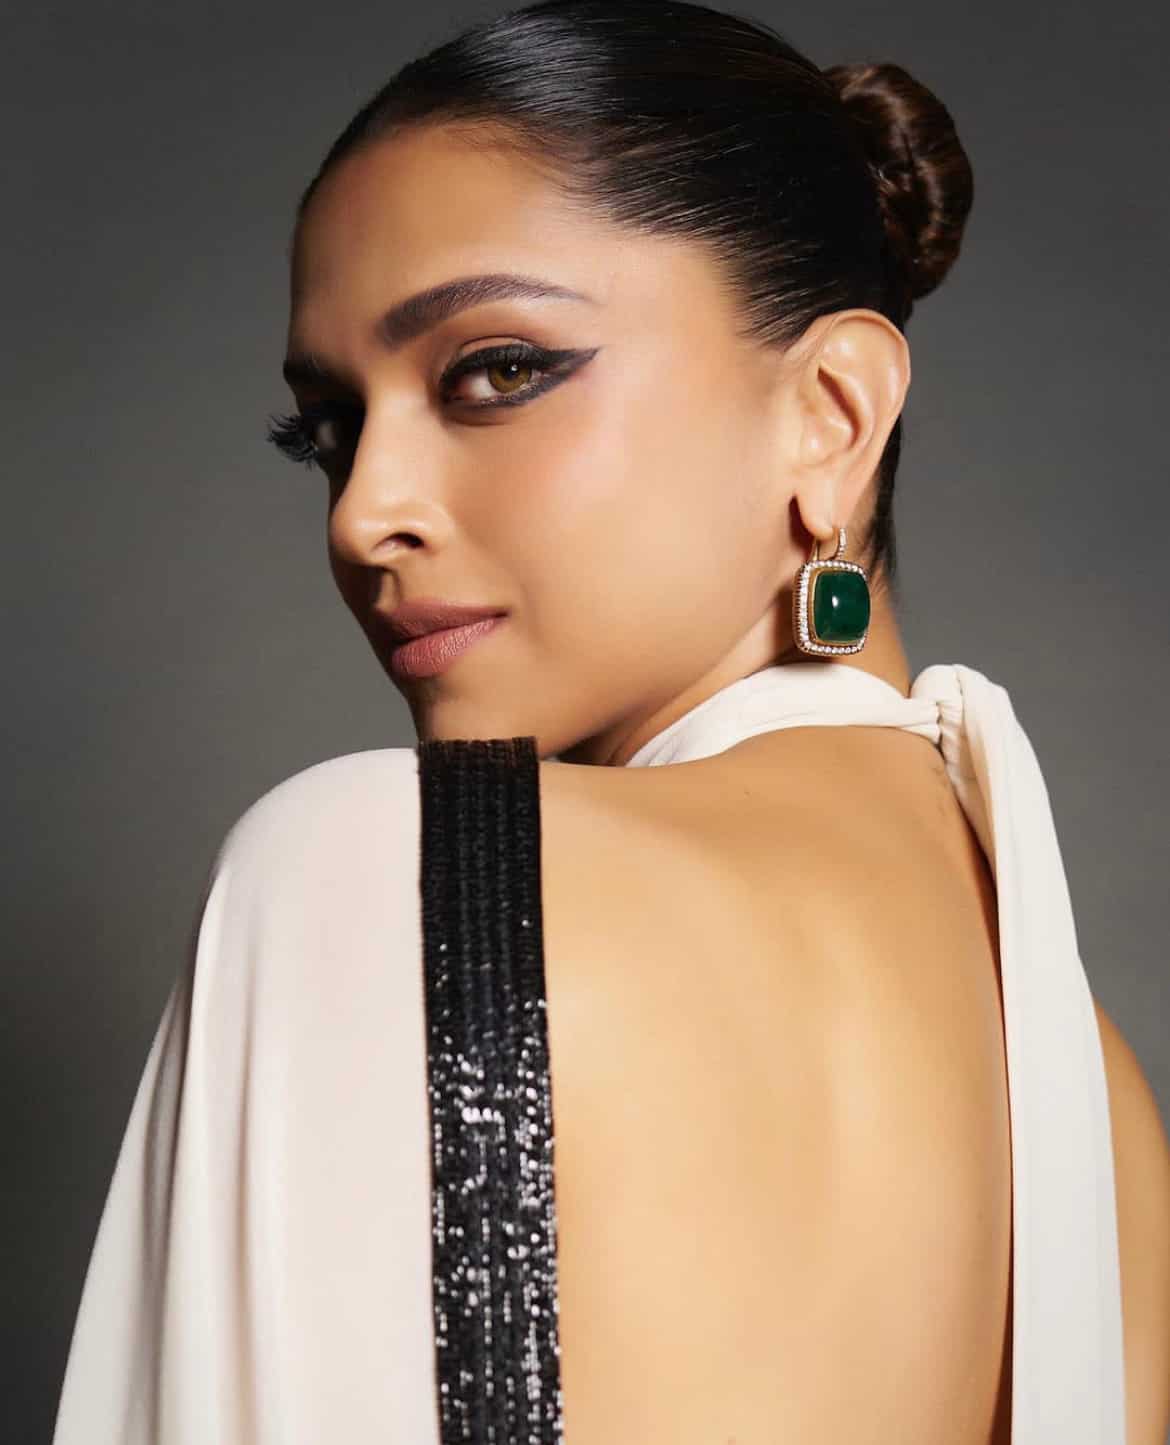 5 Minimalistic Earrings Ideas for Women ft. Deepika Padukone